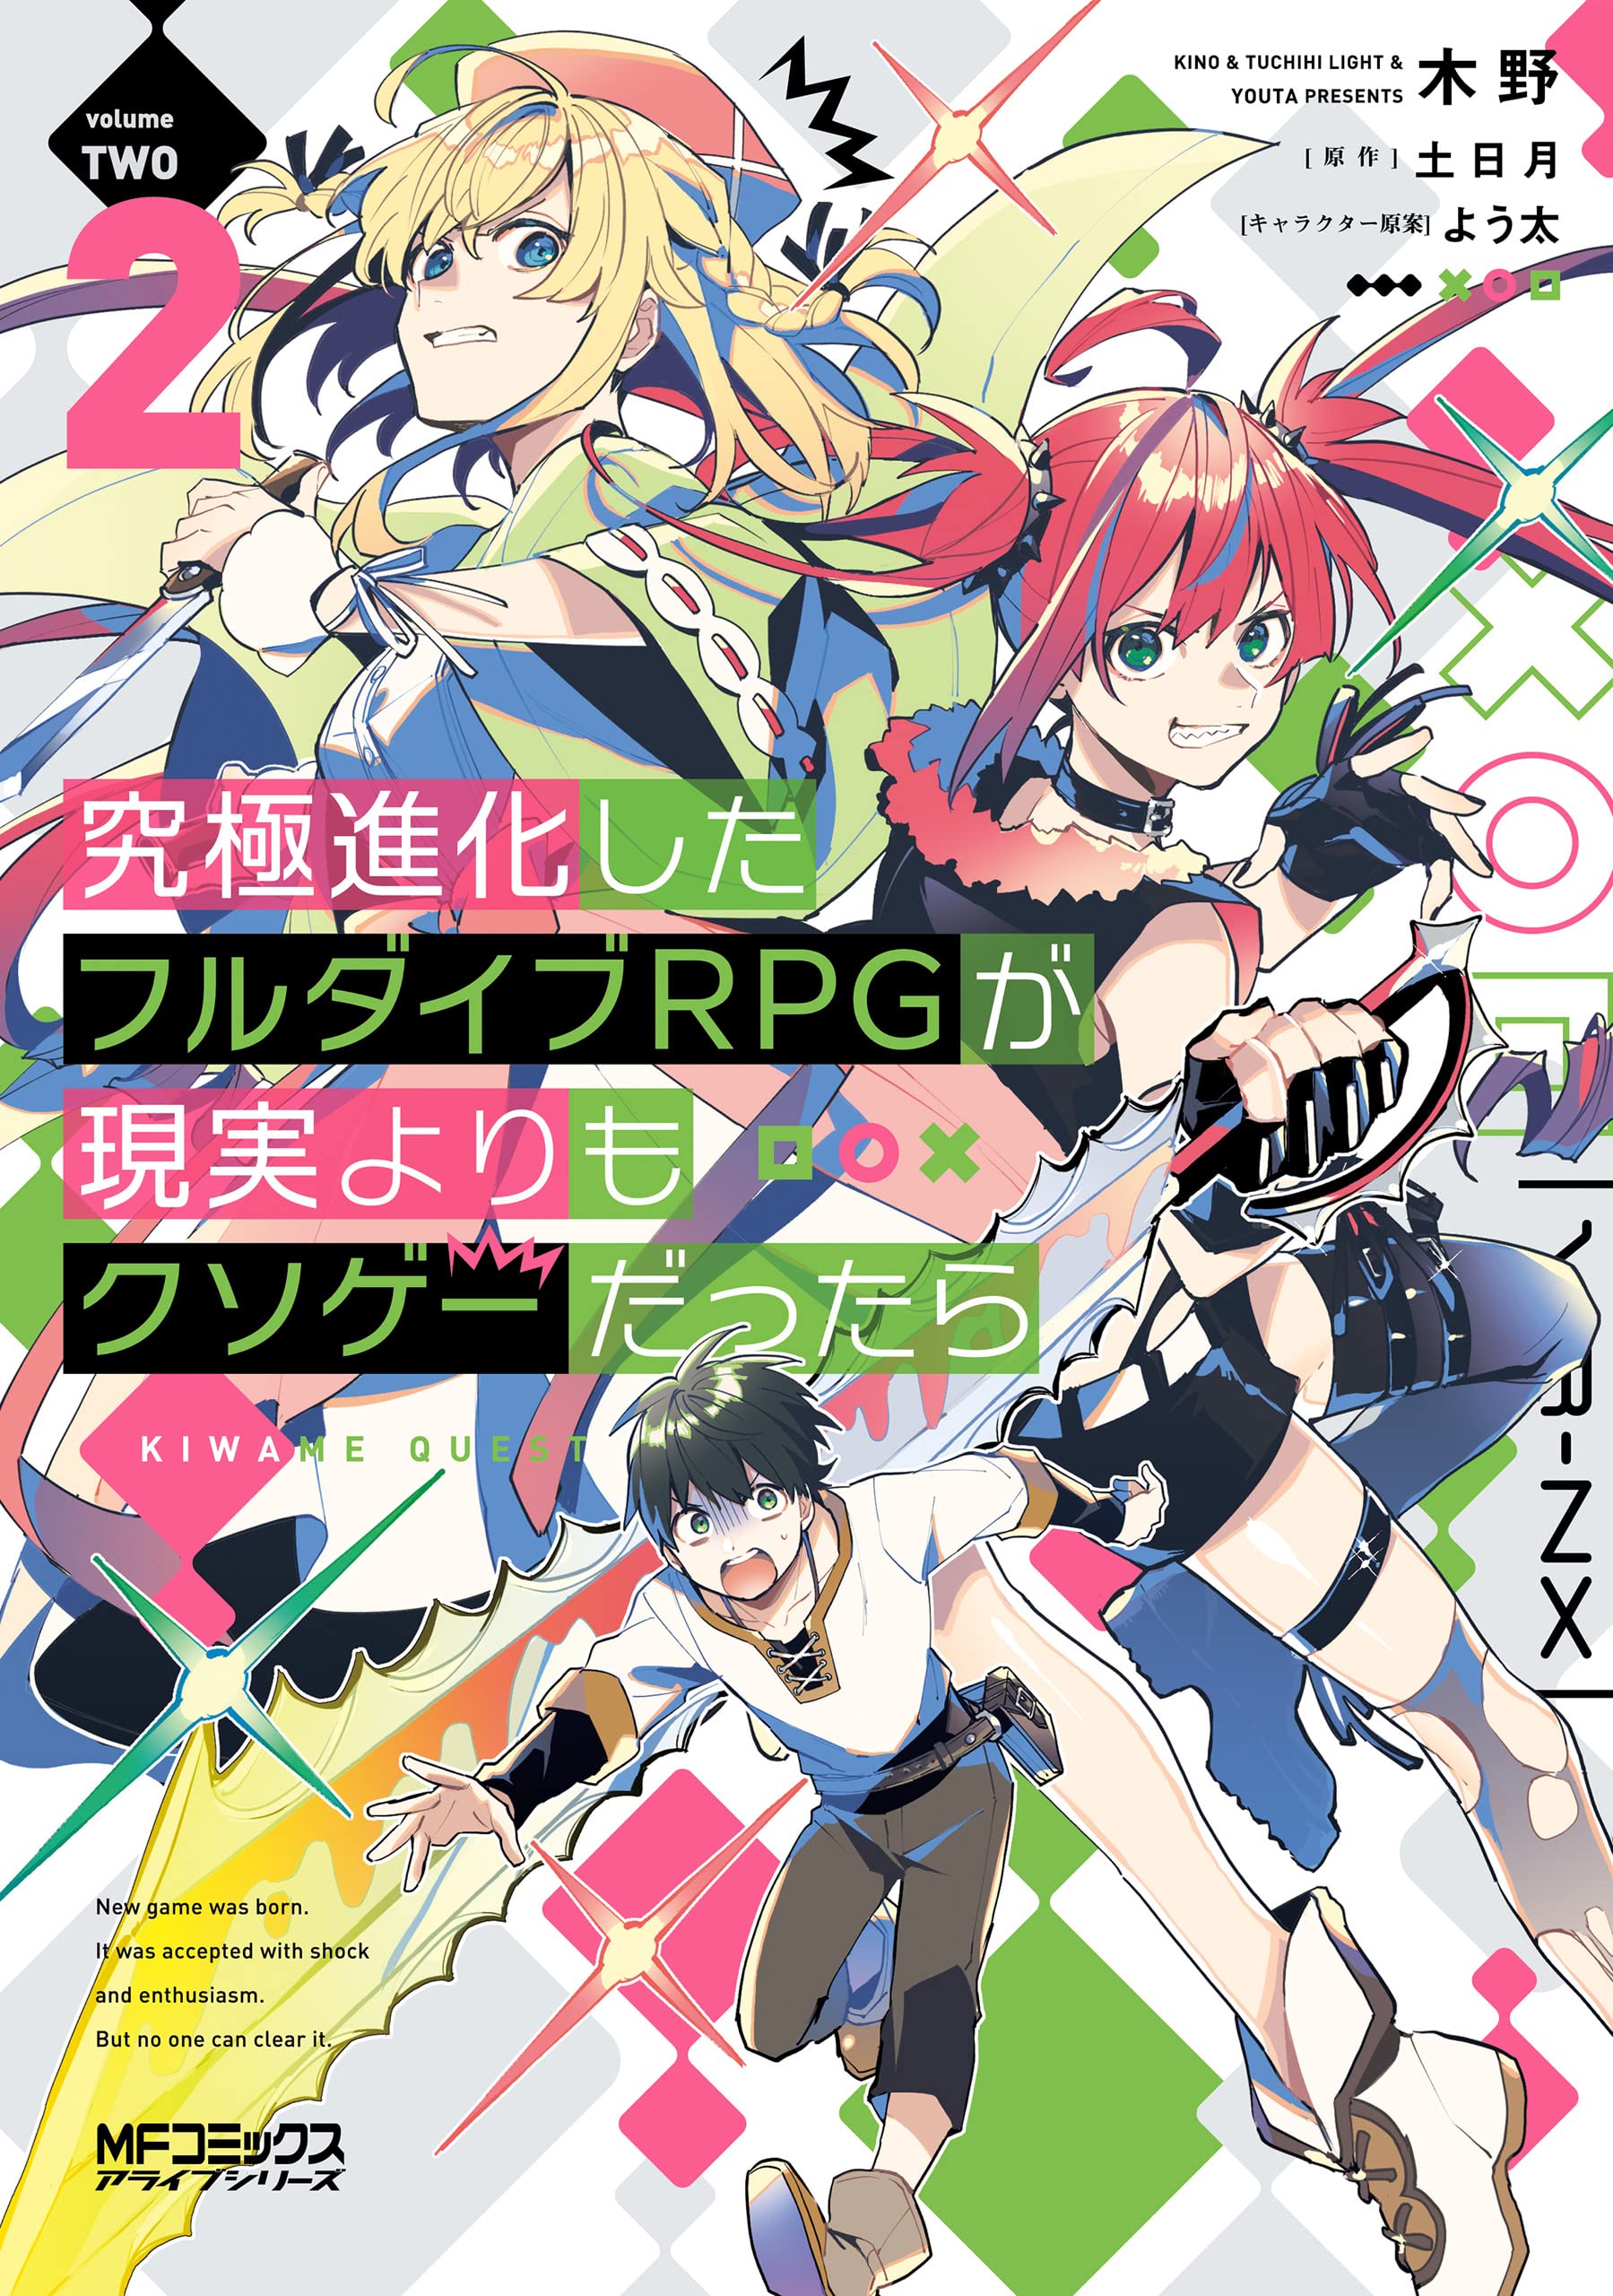 Full Dive RPG episódio 3: Data e hora de lançamento - Manga Livre RS